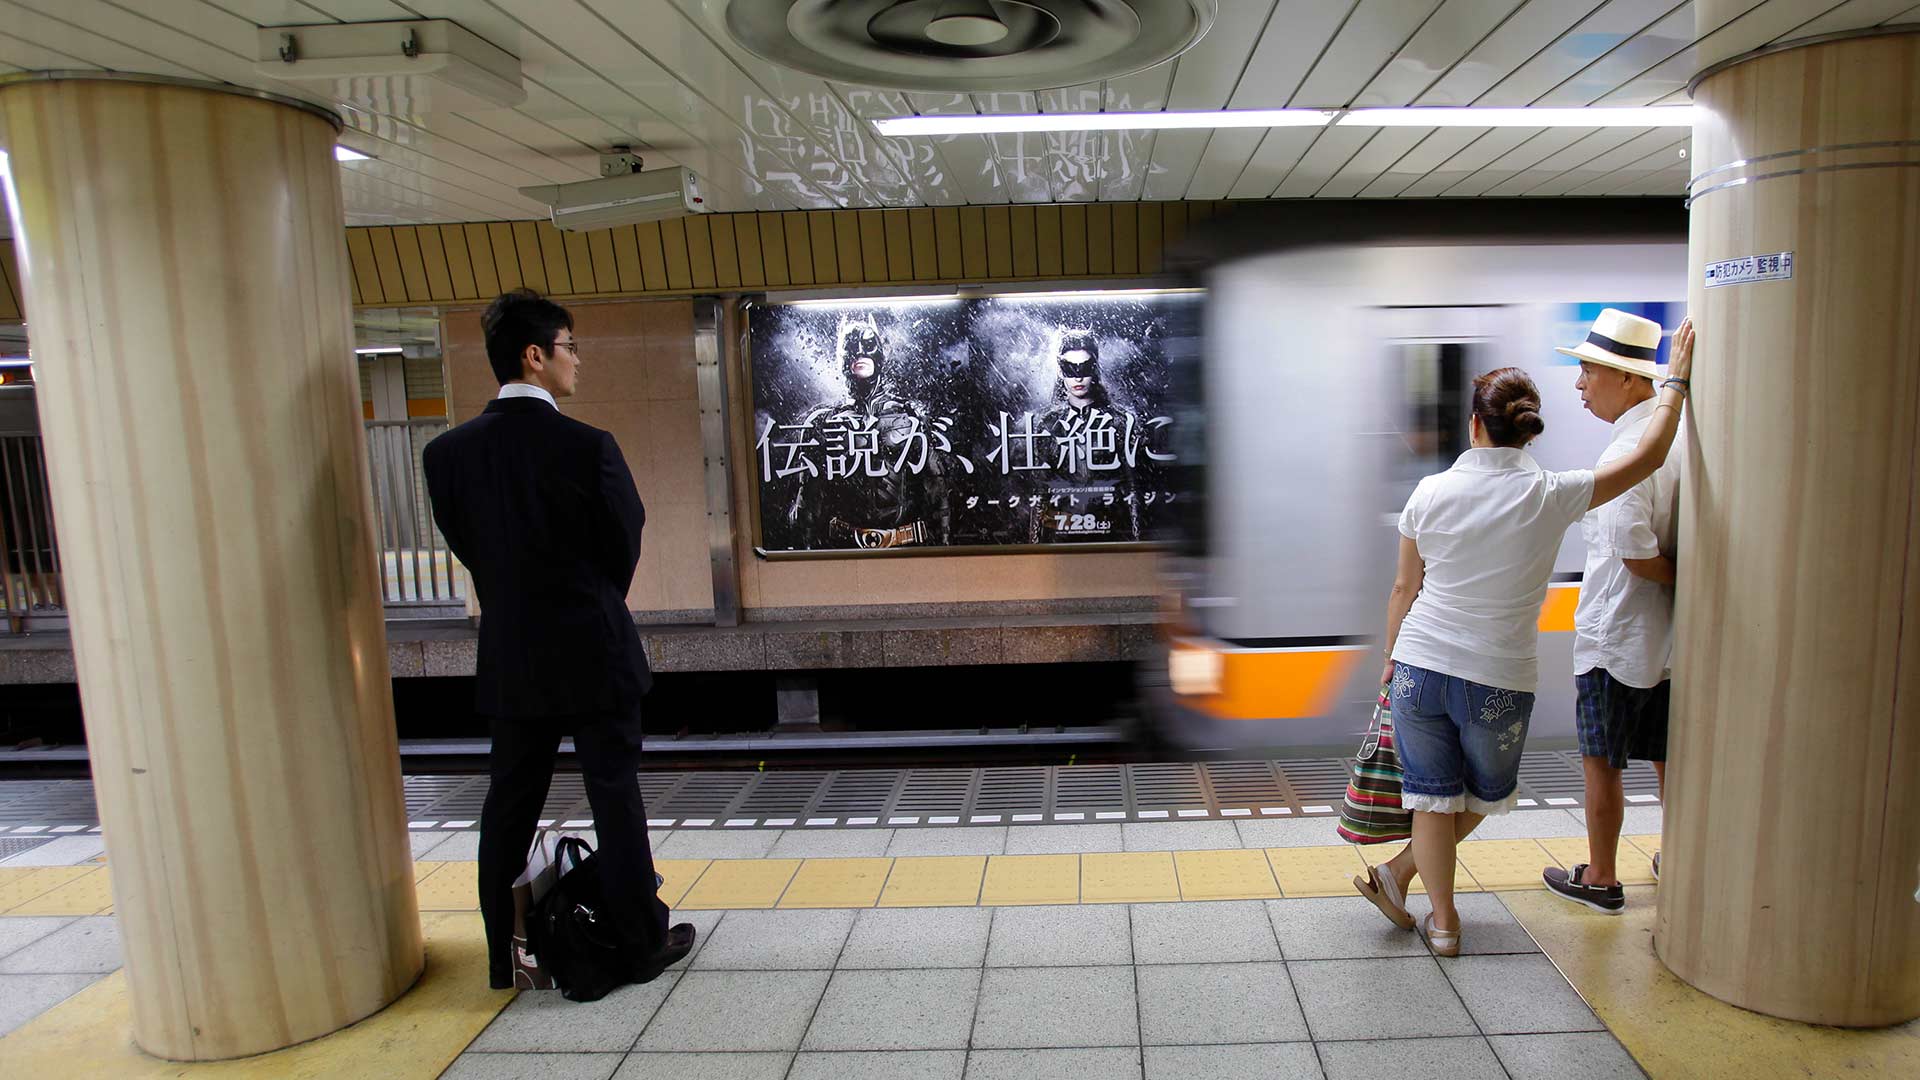 Así es la aplicación antisobones que causa furor en el metro de Tokio